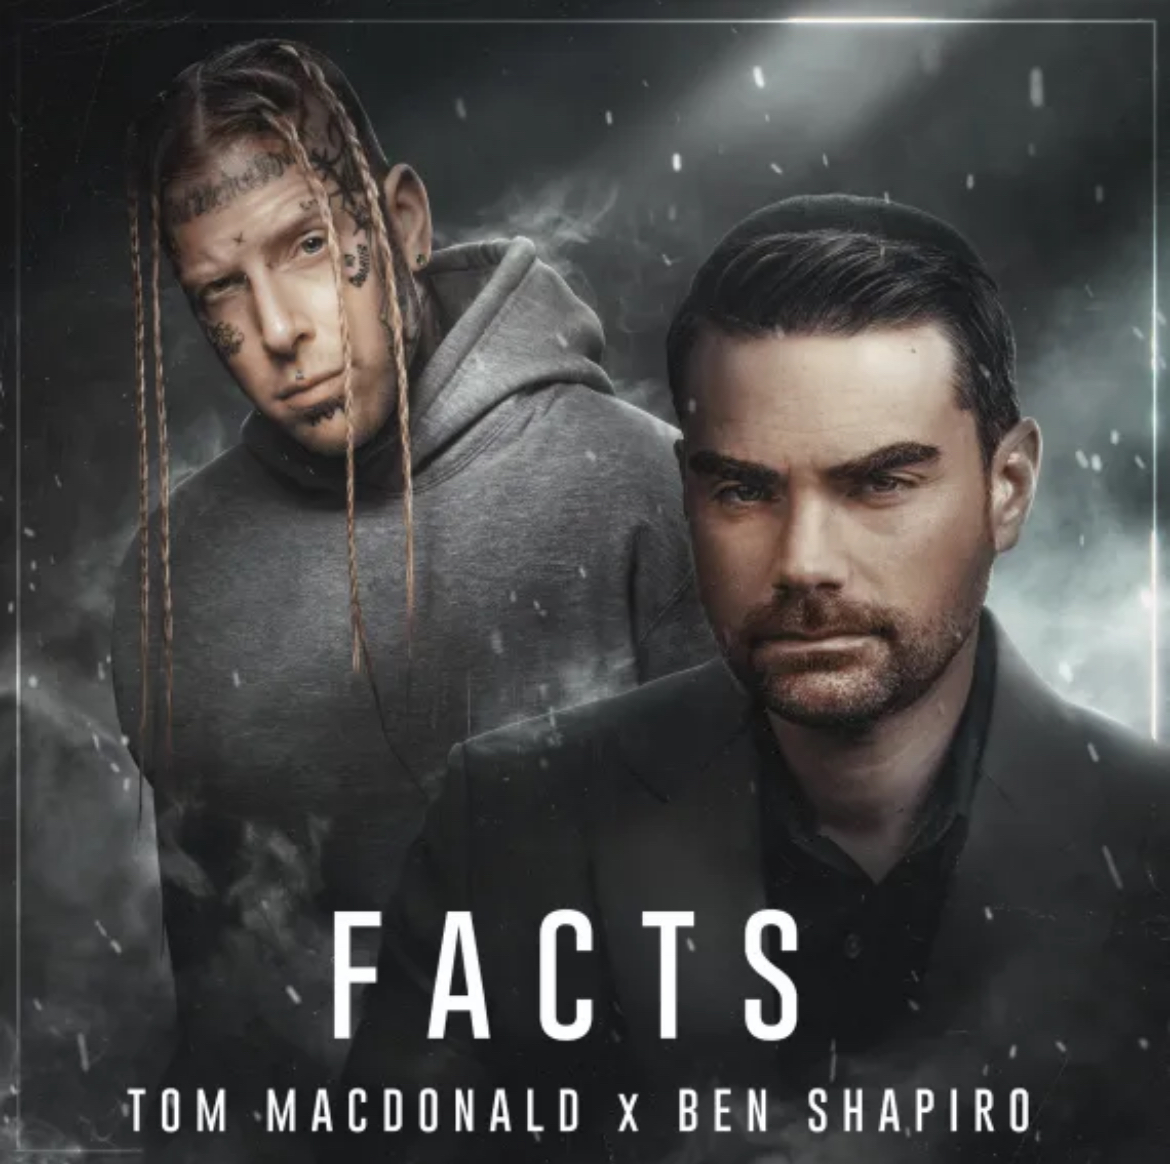 Tom MacDonald & Ben Shapiro Facts review by RadicalRanga Album of